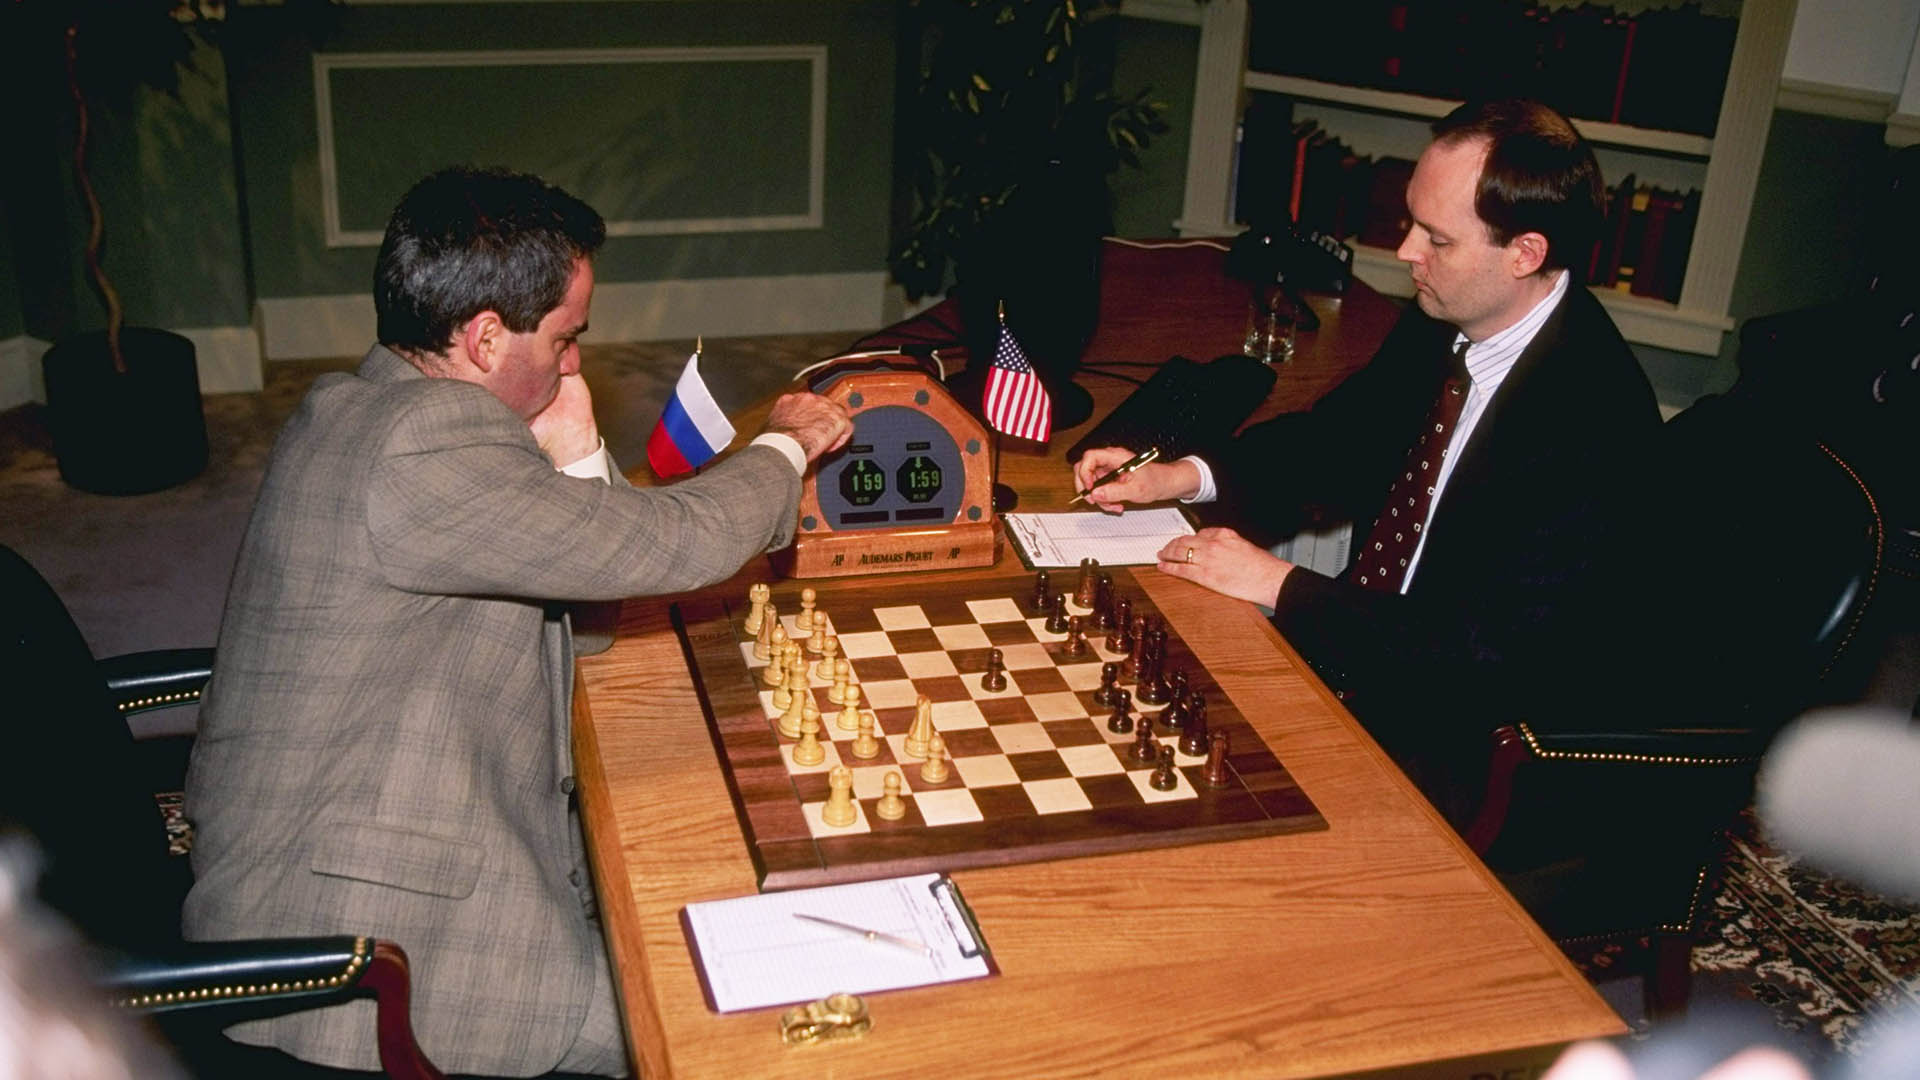 10 May 1997:  el campeón mundial de ajedrez Garry Kasparov enfrenta a la super computadora Deep Blue en Nueva York (Foto: Bernie Nunez  /Allsport)